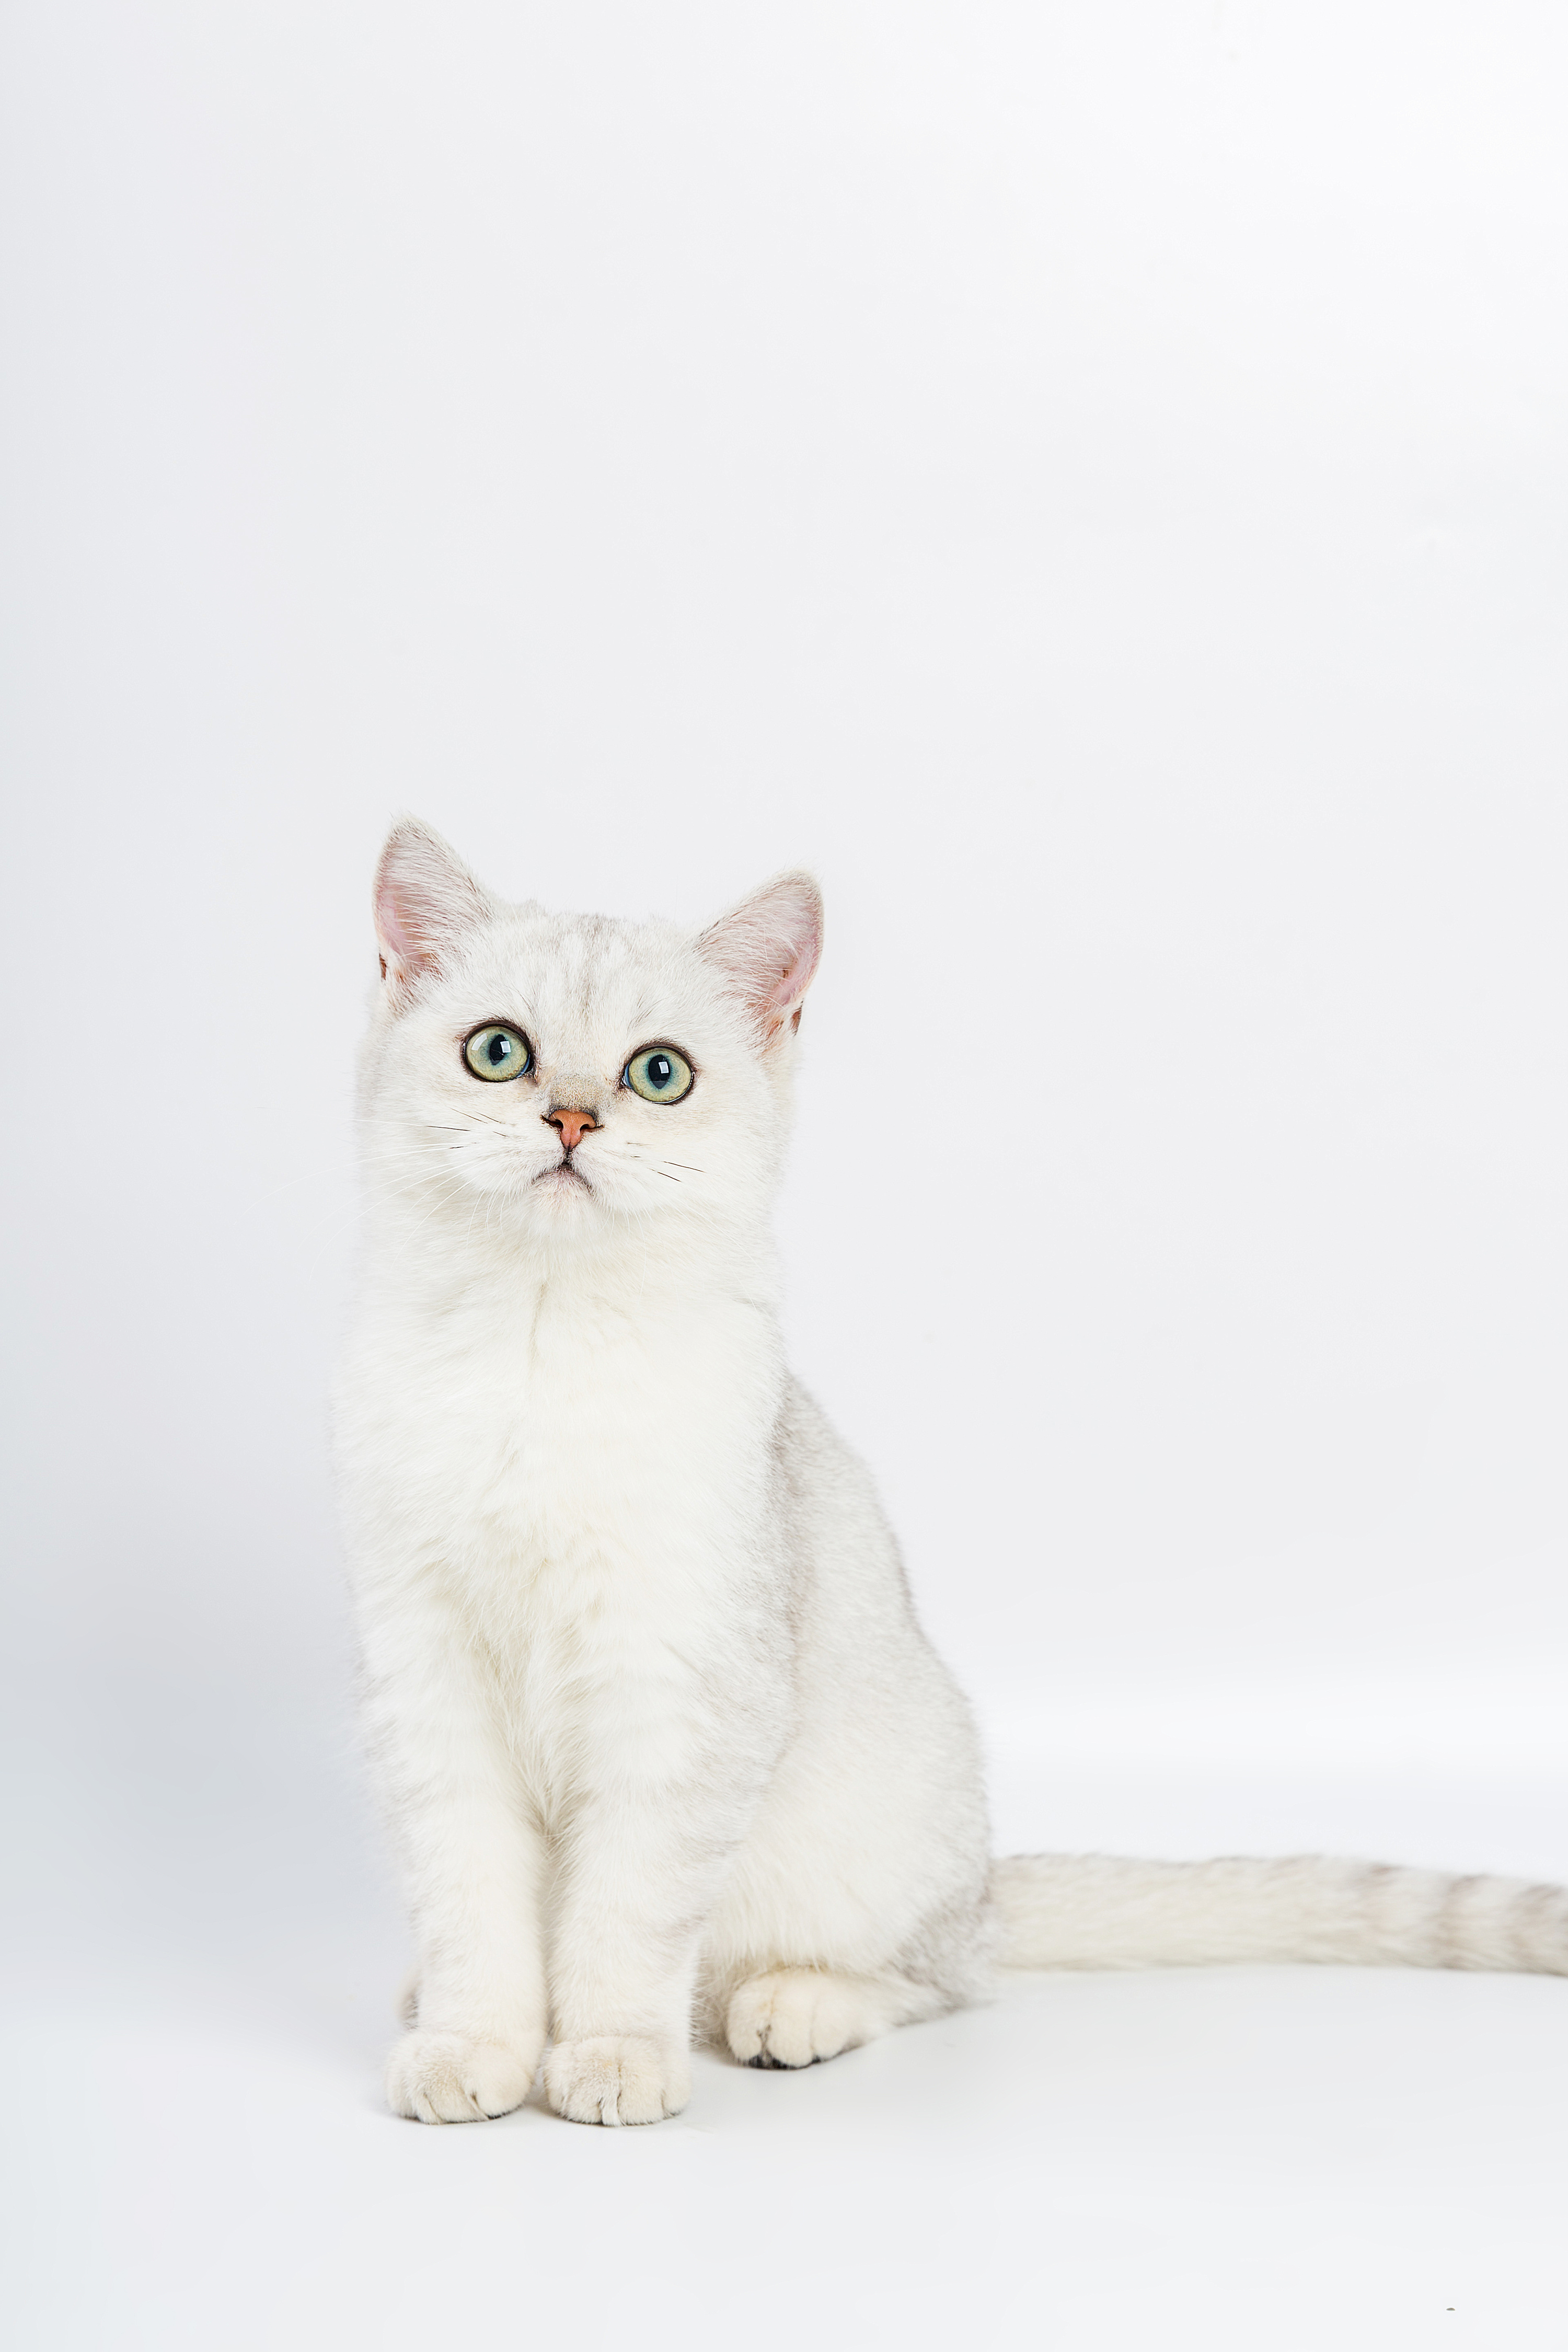 可爱白色猫咪 小猫 壁纸-壁纸图片大全